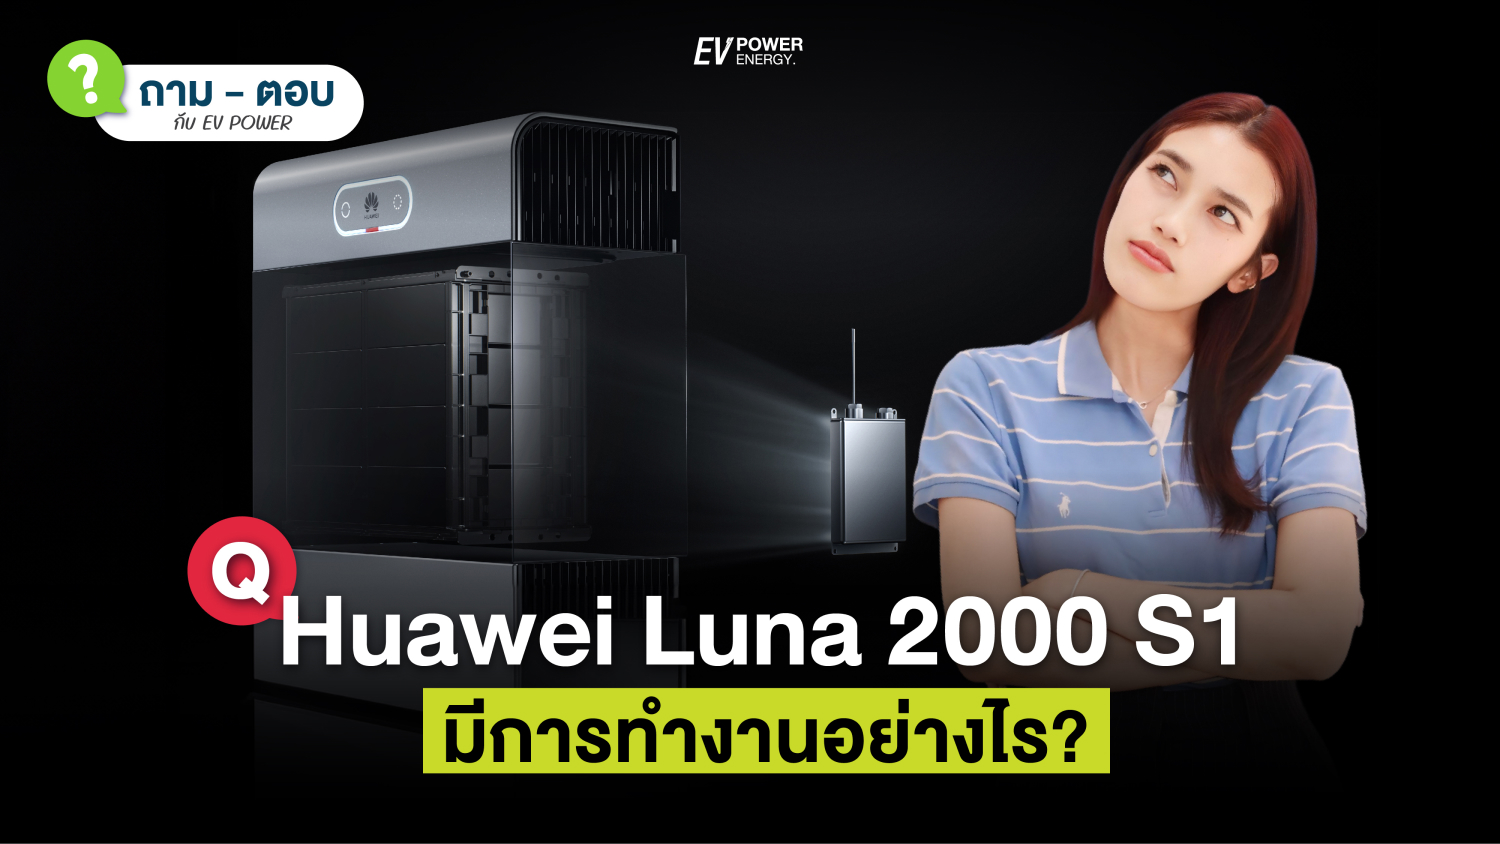 Q&A Huawei LUNA S1 ทำงานอย่างไร